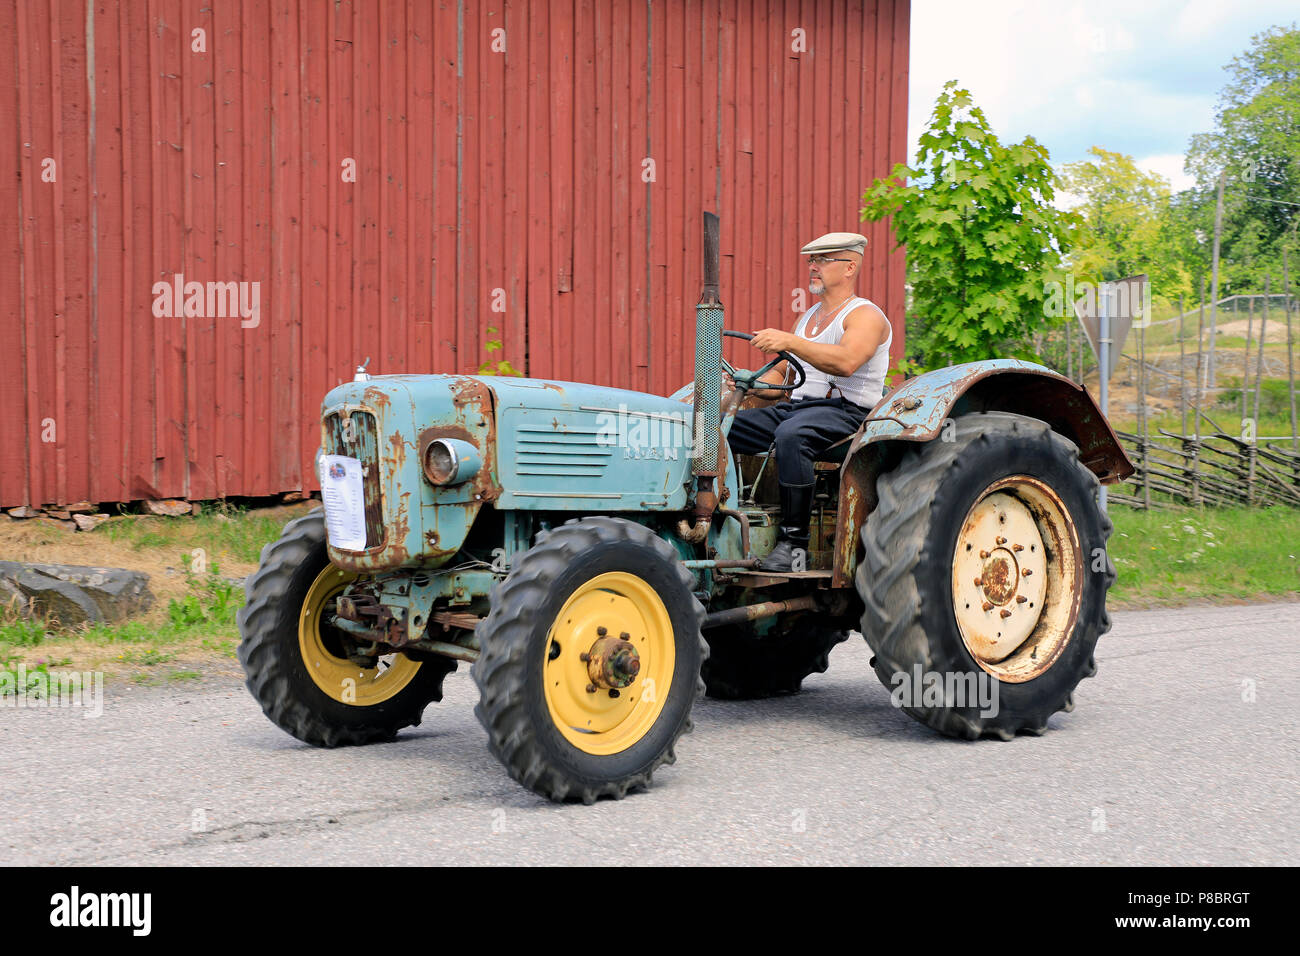 Classic MAN tractor and driver on the annual Kimito Traktorkavalkad, Tractor Cavalcade, Kimito, Finland - July 7, 2018. Stock Photo